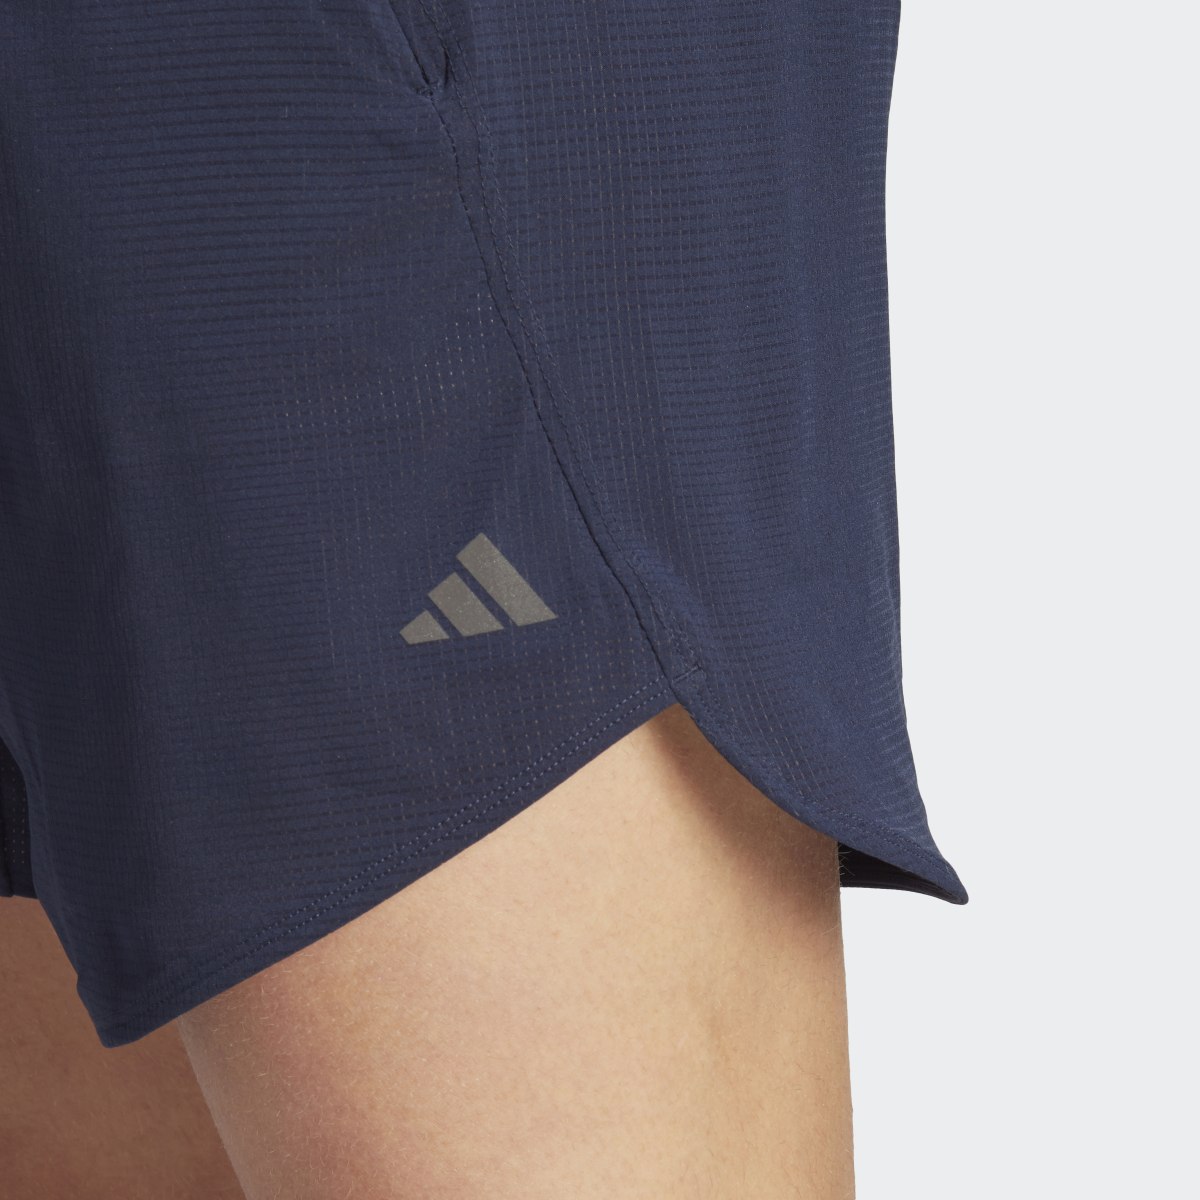 Adidas Designed for Training HIIT Training Shorts. 5